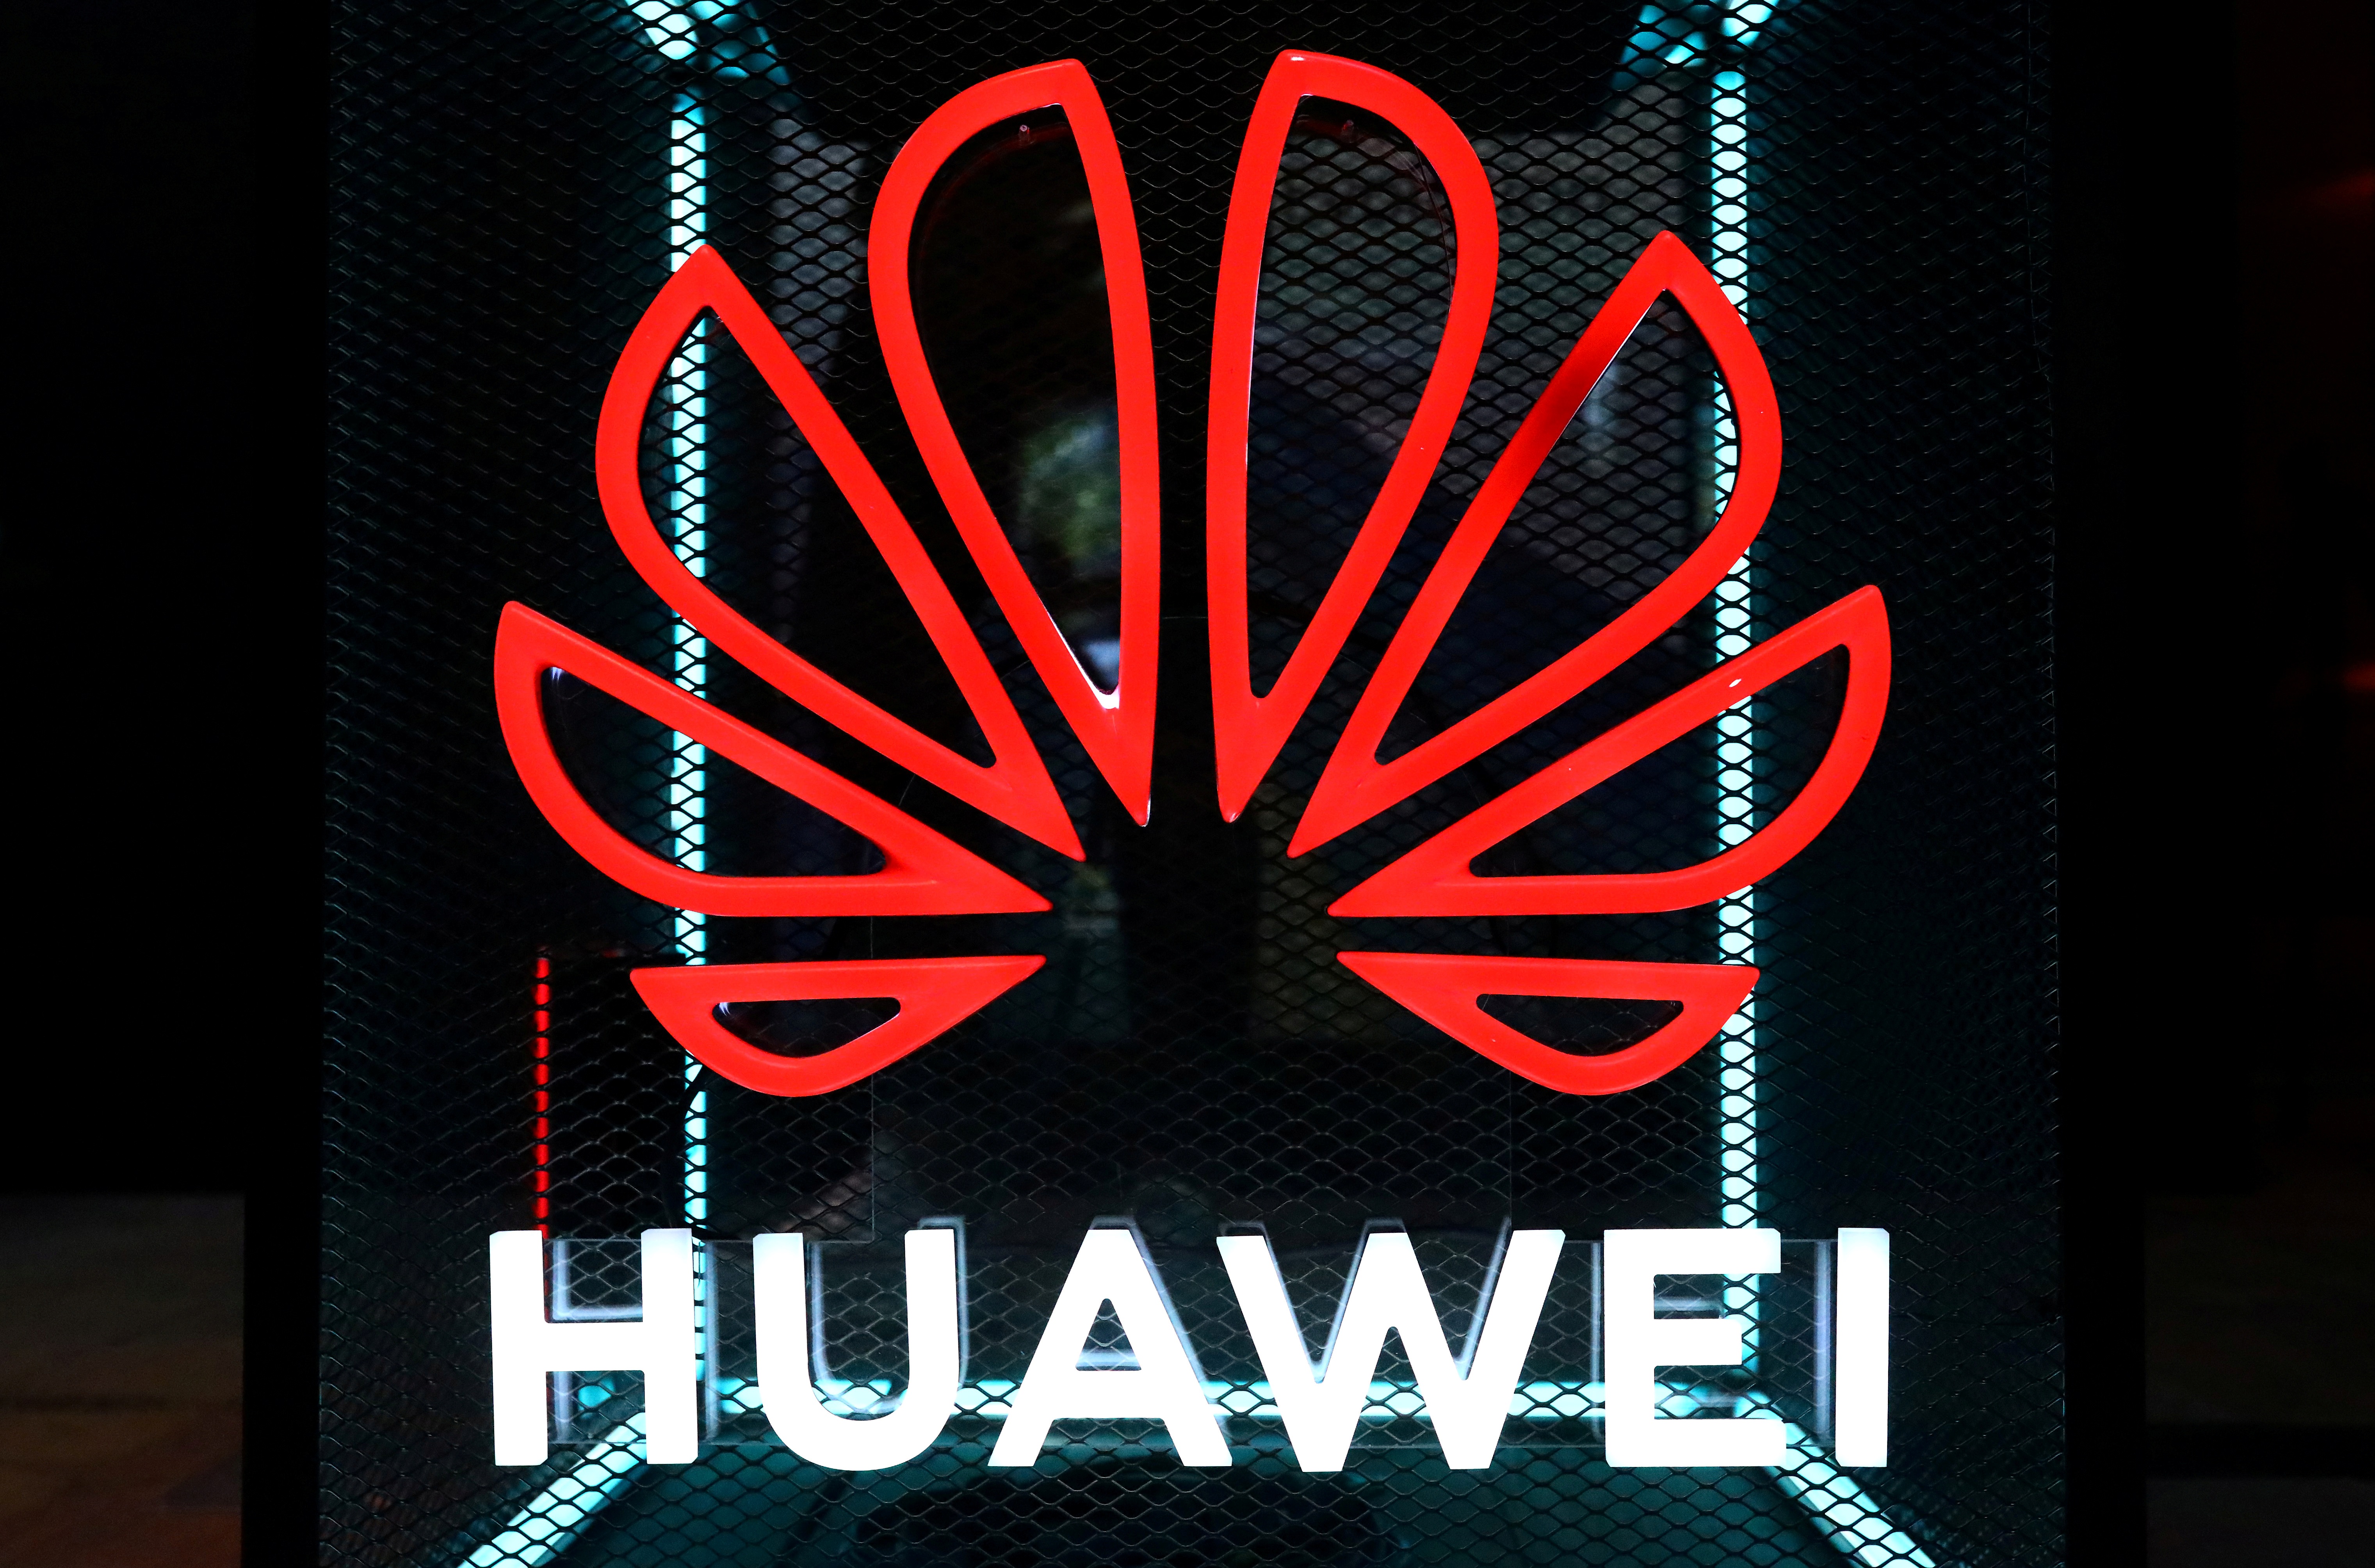 Τραμπ: “Κίνδυνος για την ασφάλεια η κινεζική εταιρία τηλεπικοινωνιών Huawei”!